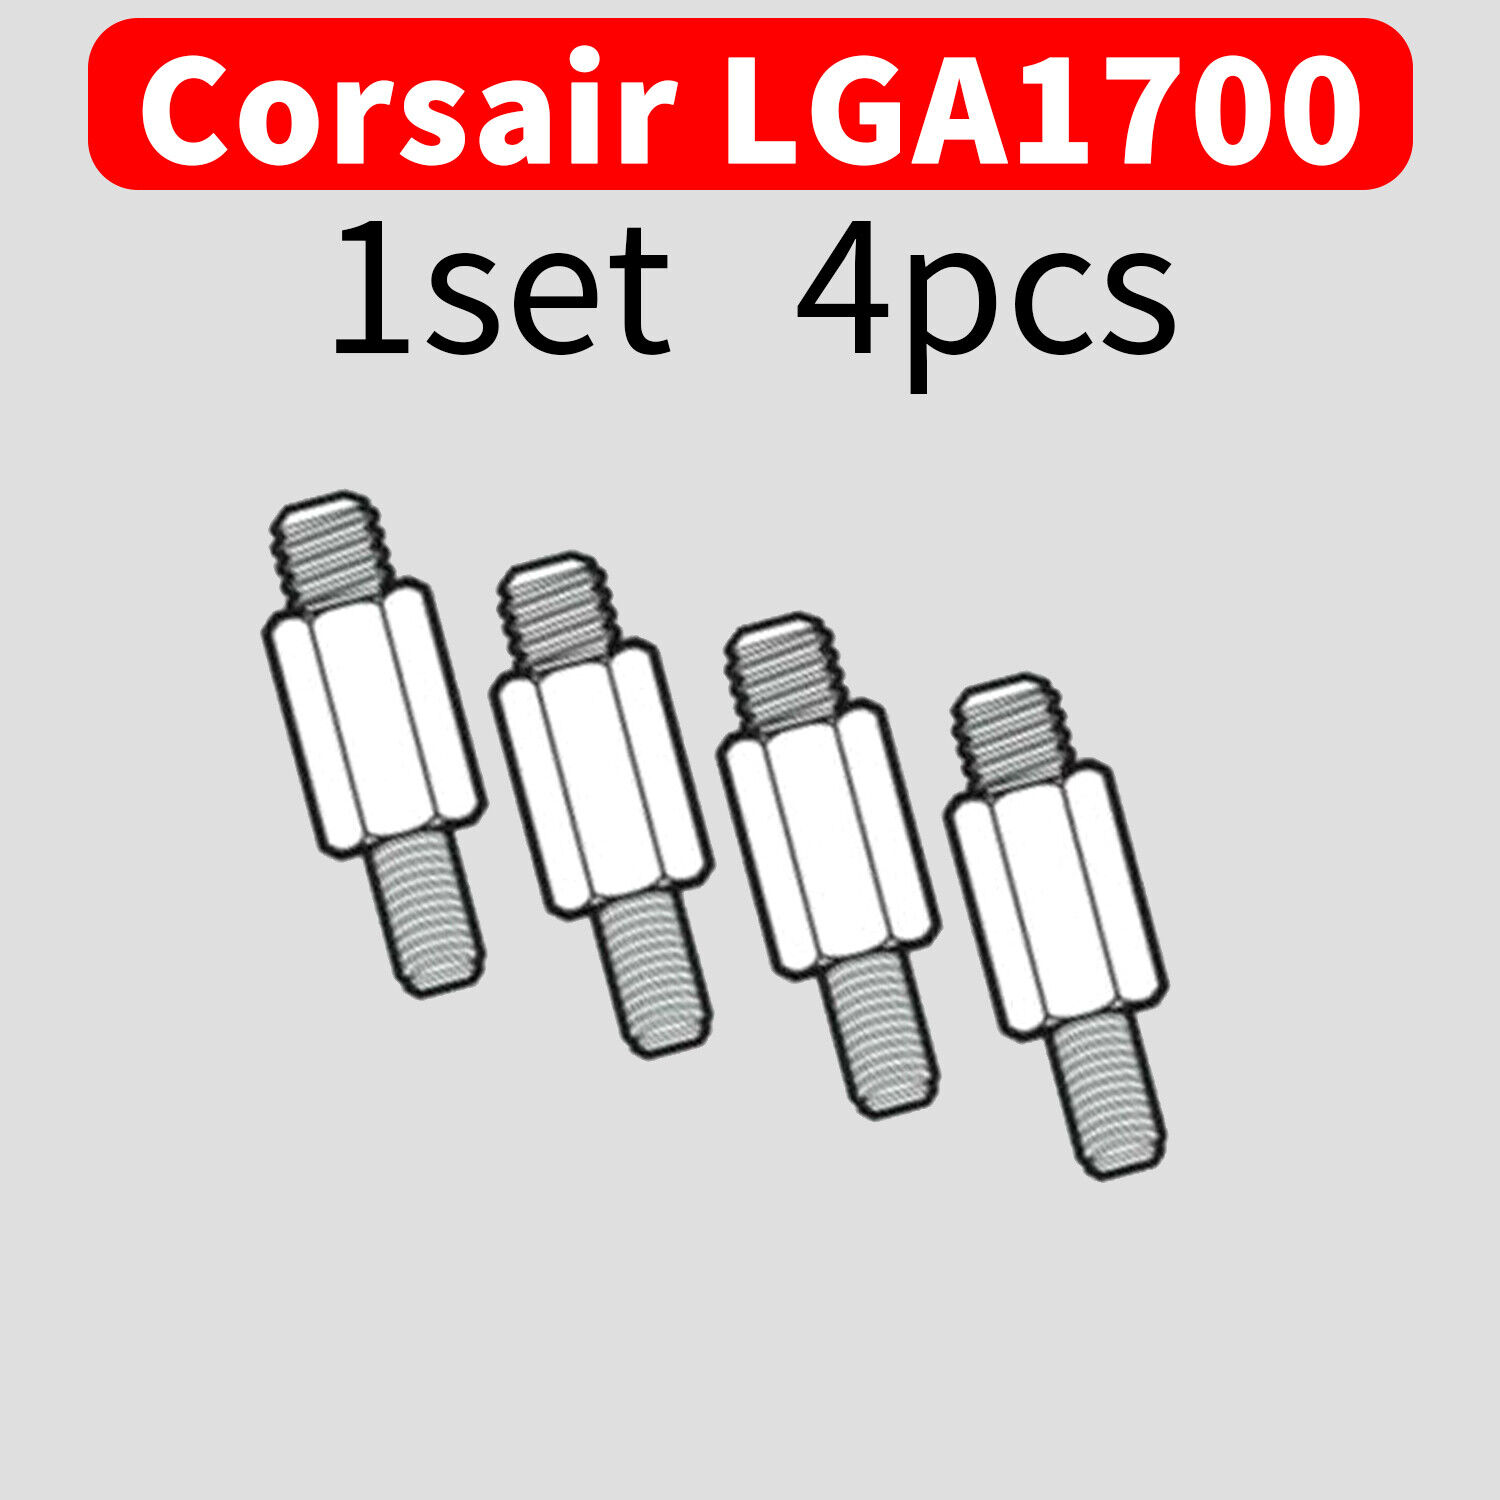 Corsair LGA1700 Retrofit UPGRADE KIT Liquid CPU Cooler Fr H60 H100x Platinum LOT